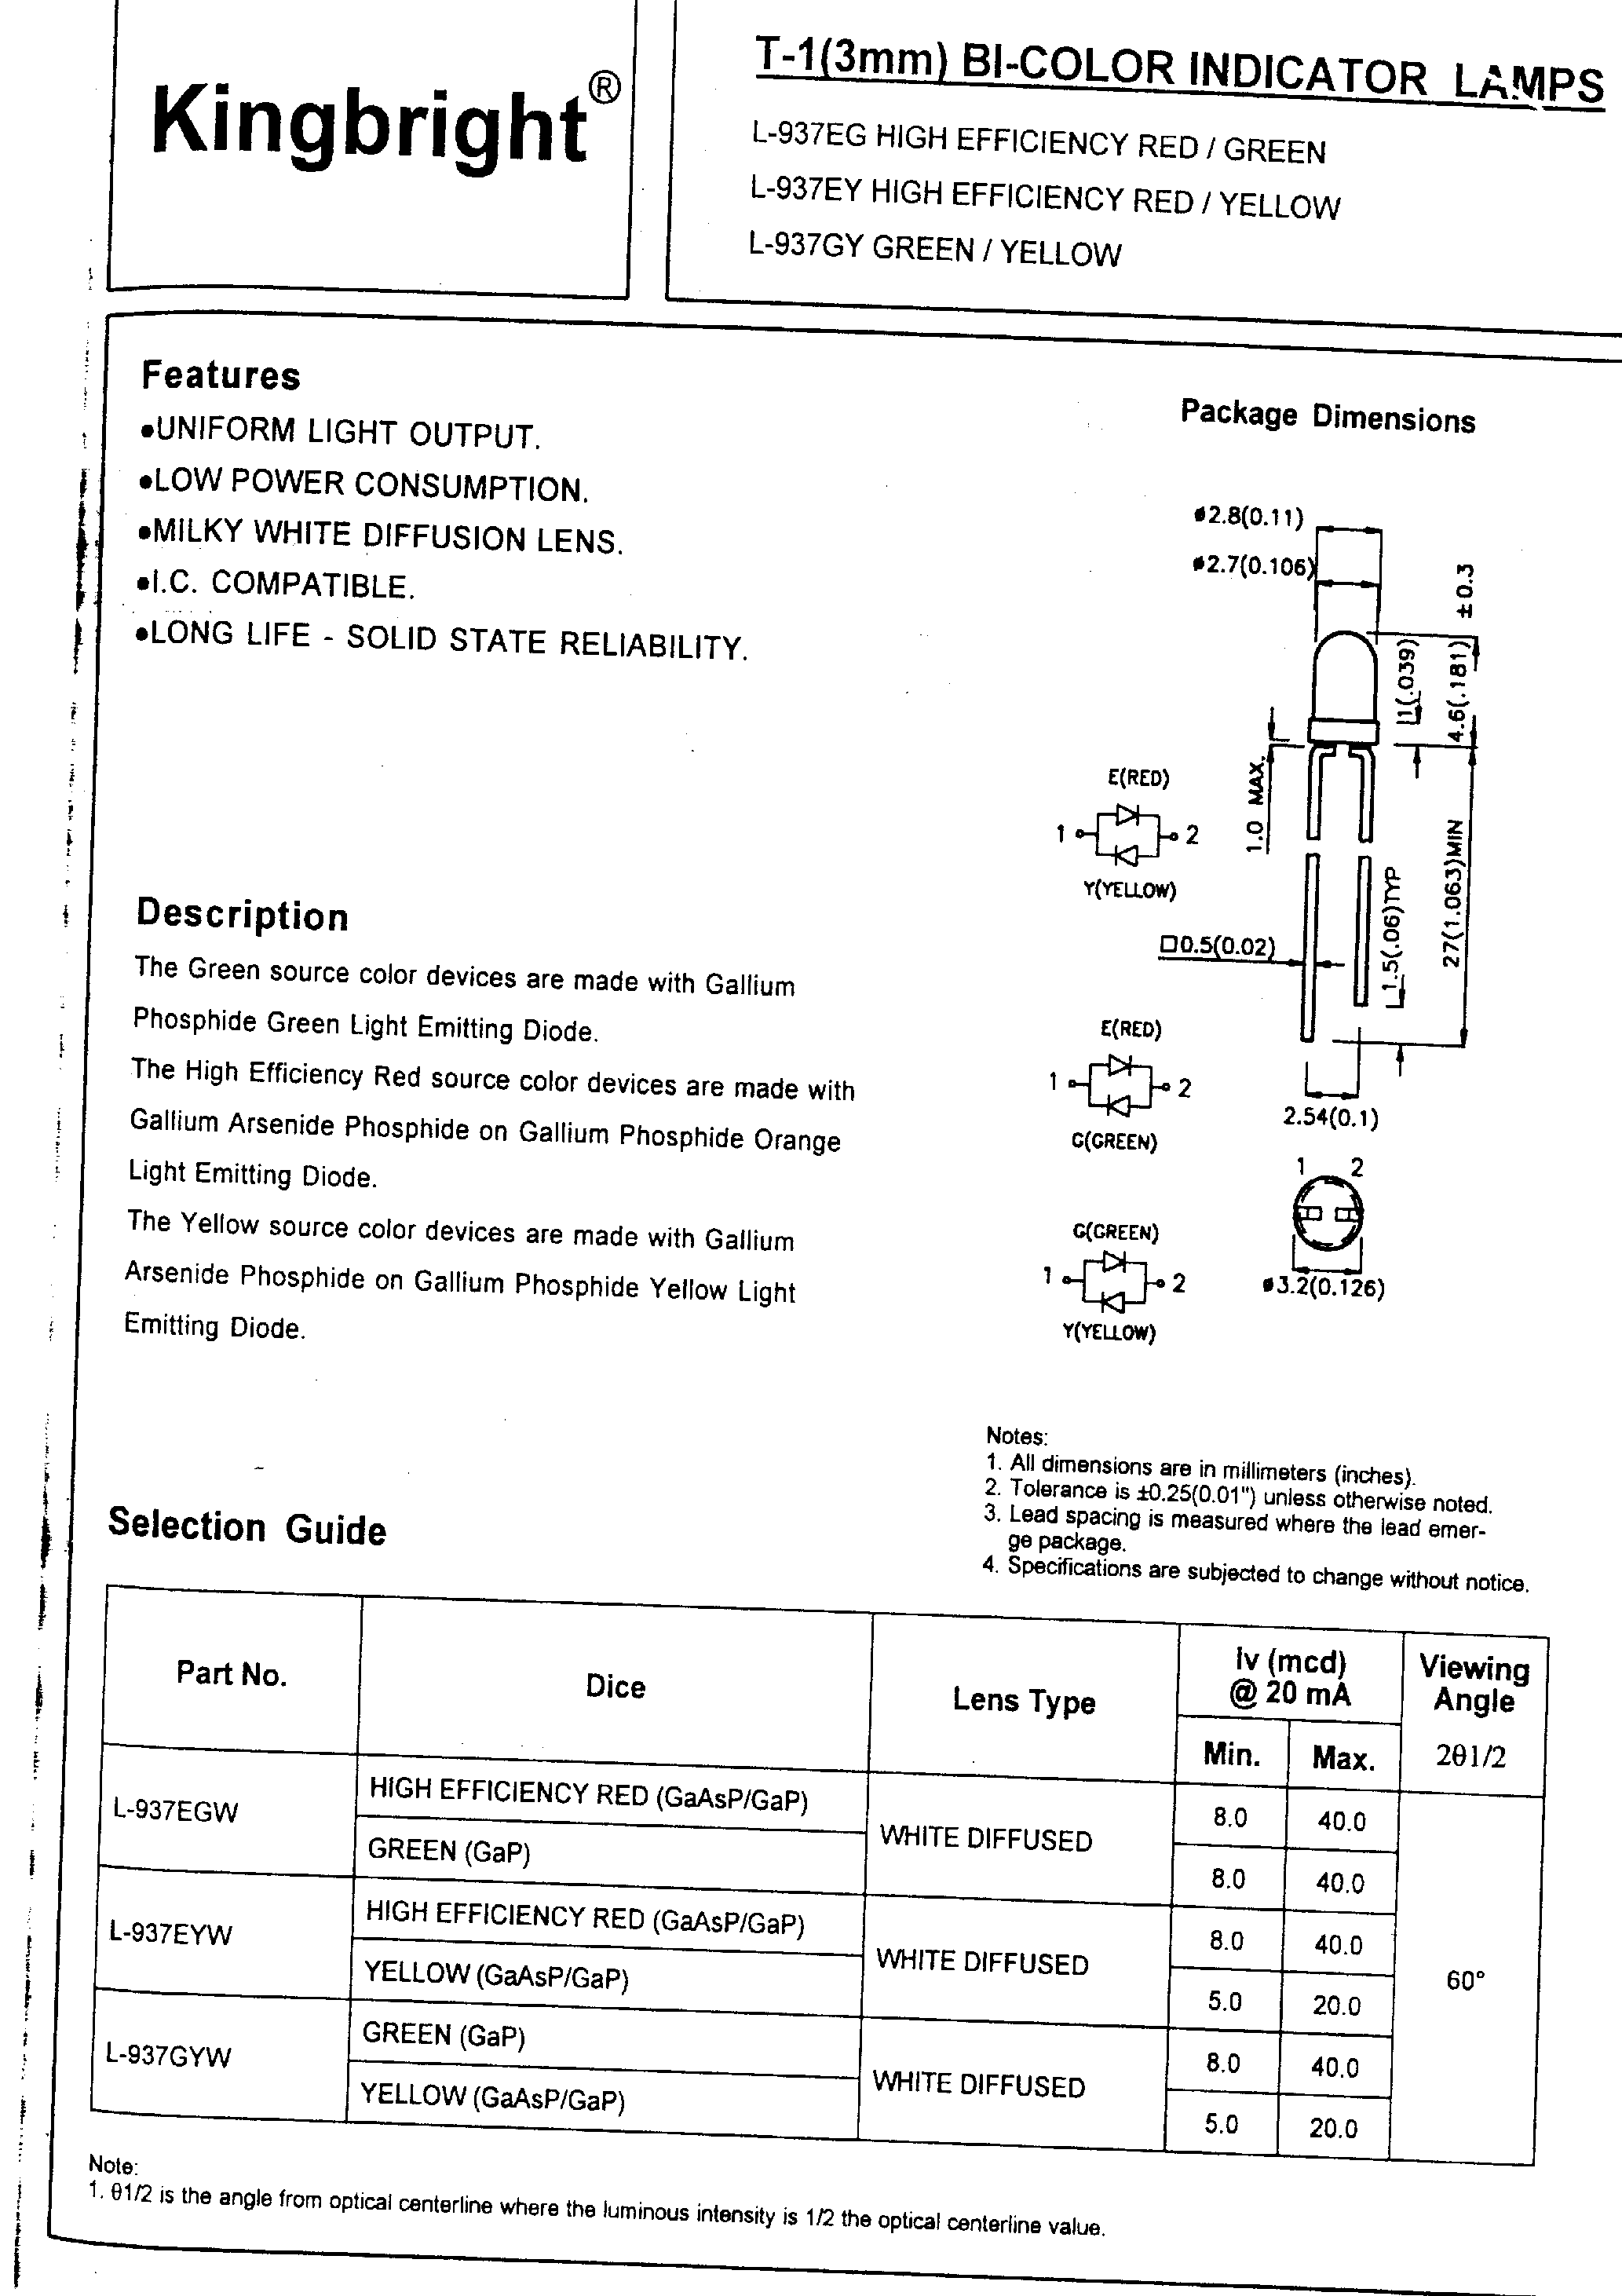 Даташит L-937 - T-1 Bi-Color Indicator Lamps страница 1